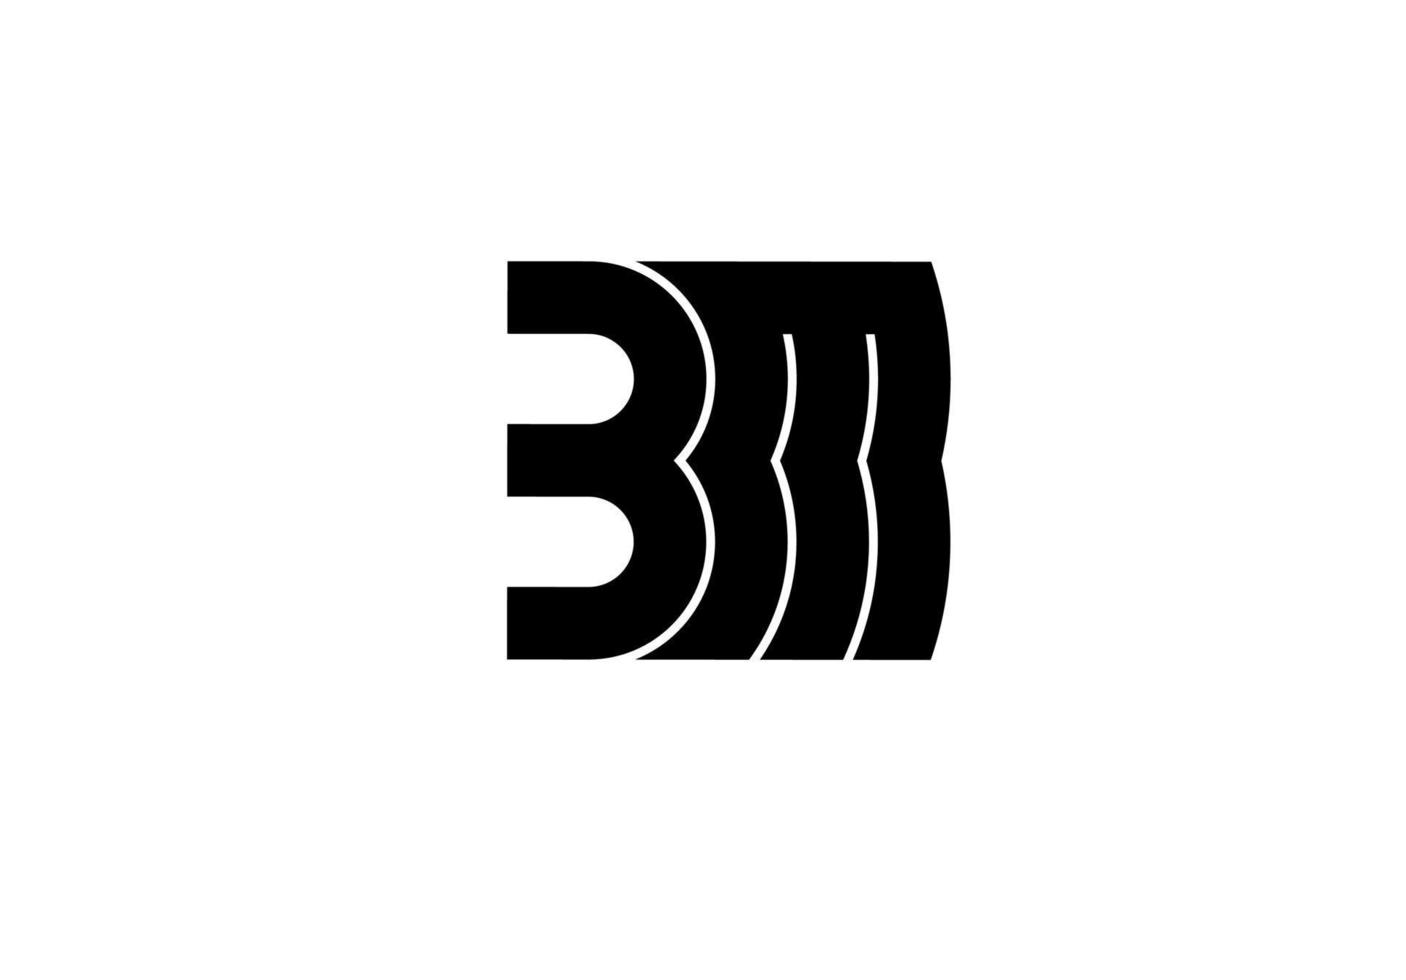 bm mb bm beginletter logo vector